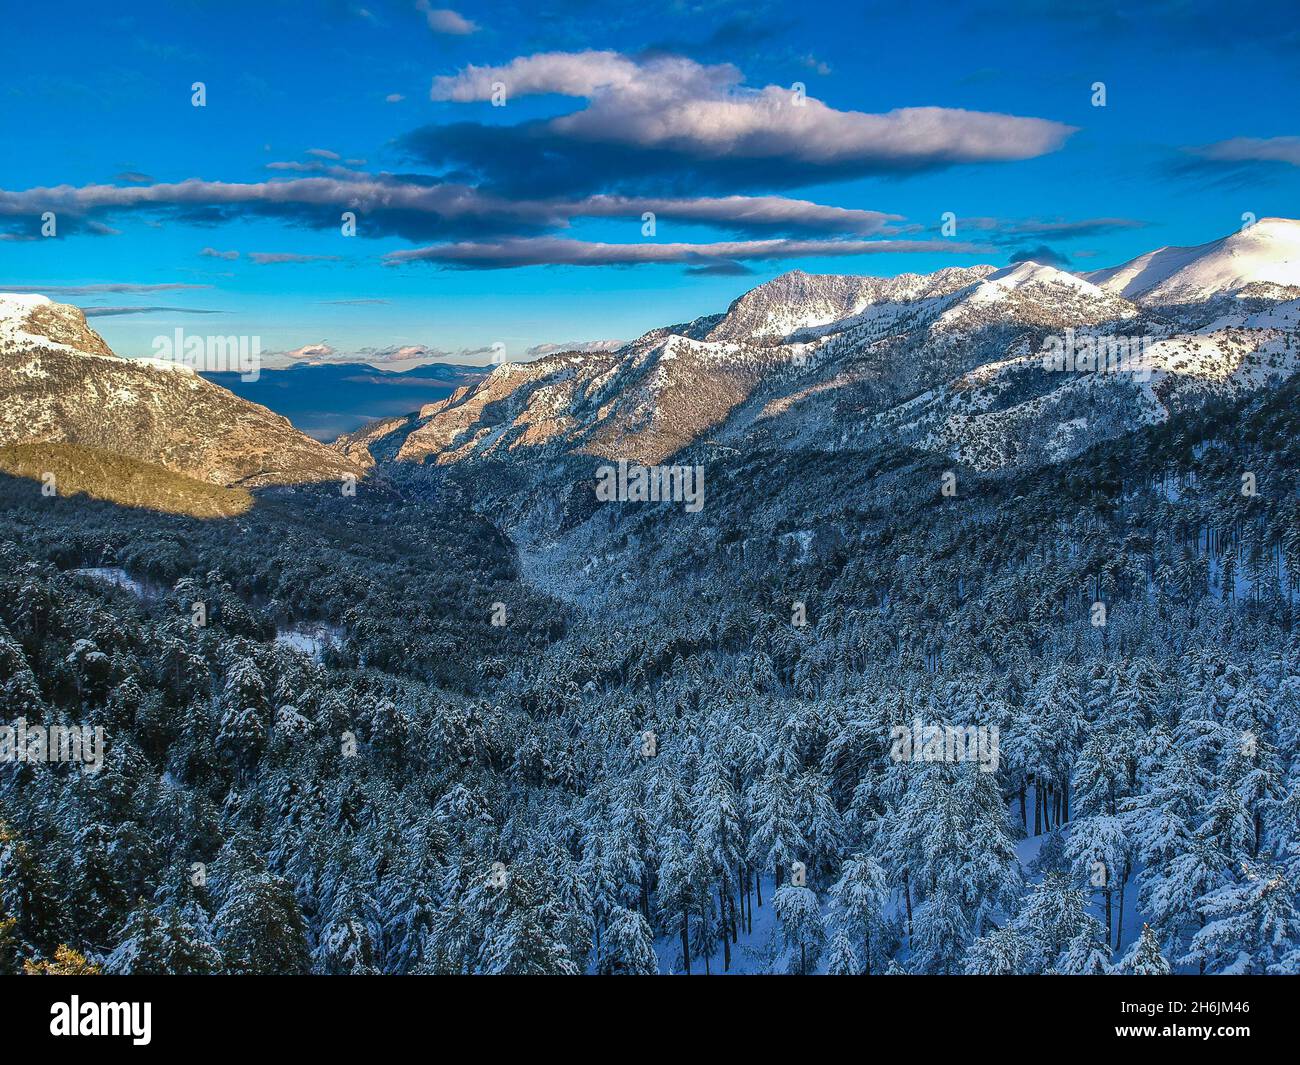 Vista aerea della montagna innevata di Taygetus (nota anche come Taaugetus o Taygetos) sopra l'unità Messenia nel Peloponneso, in Grecia. Incredibile scenario naturale di Foto Stock